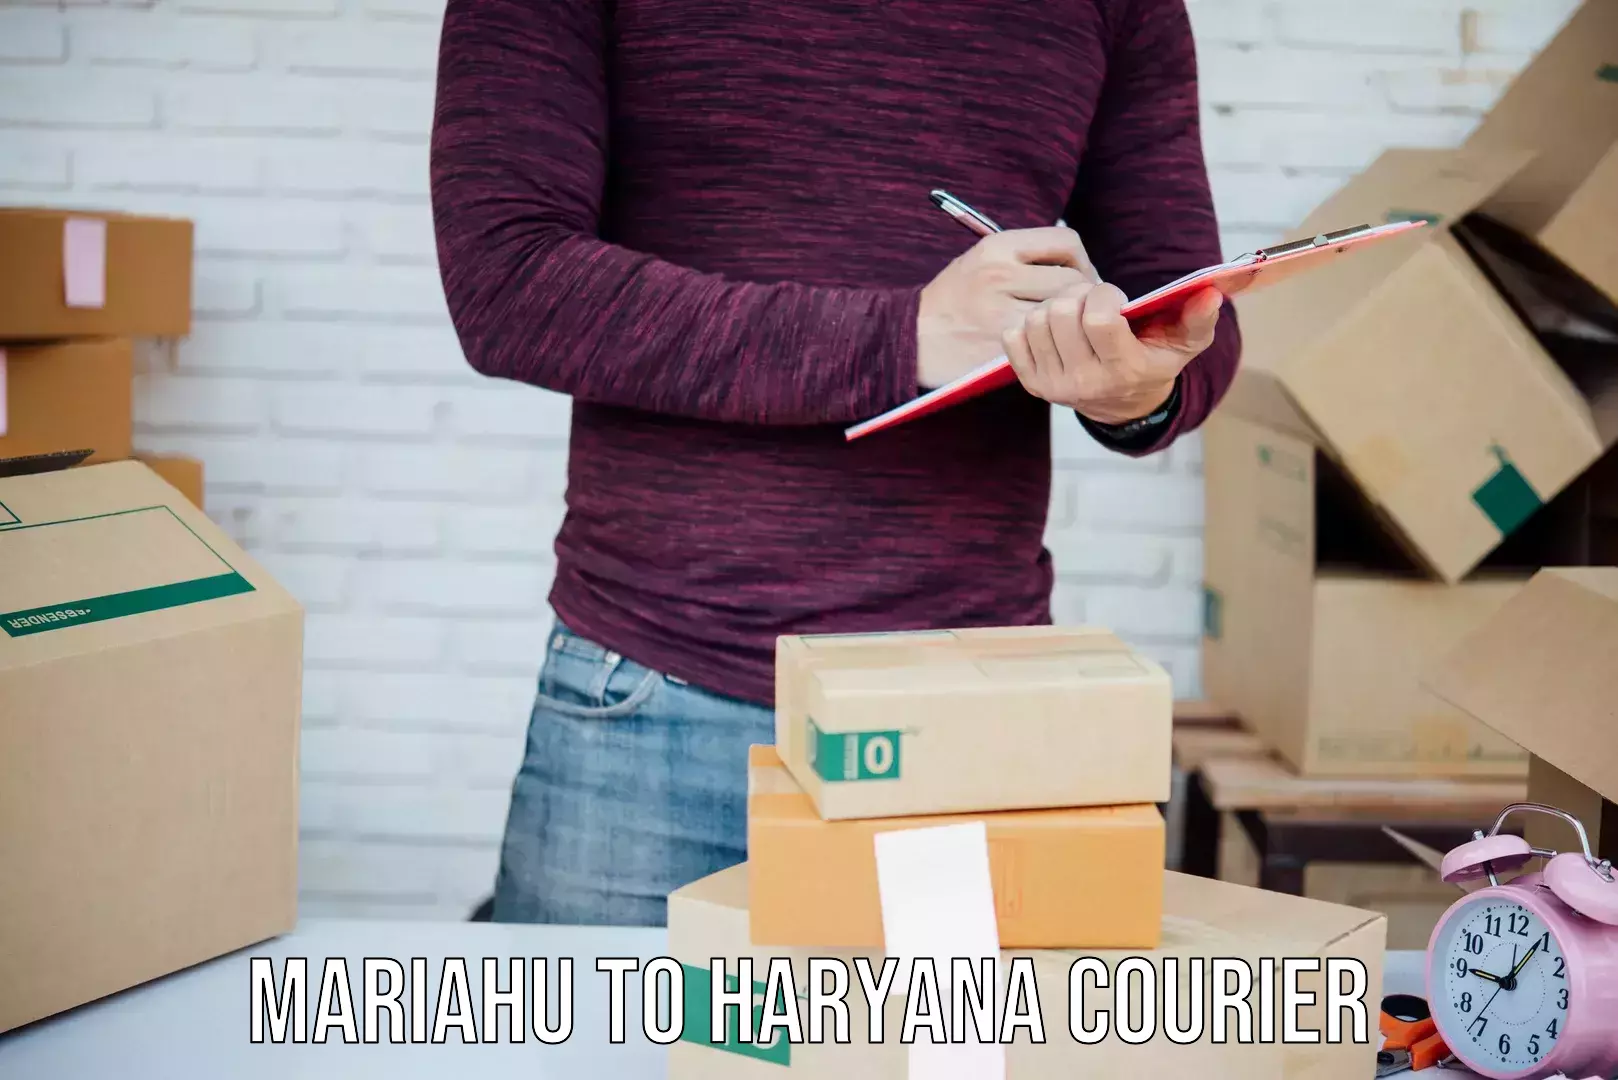 Bulk shipping discounts Mariahu to Hansi